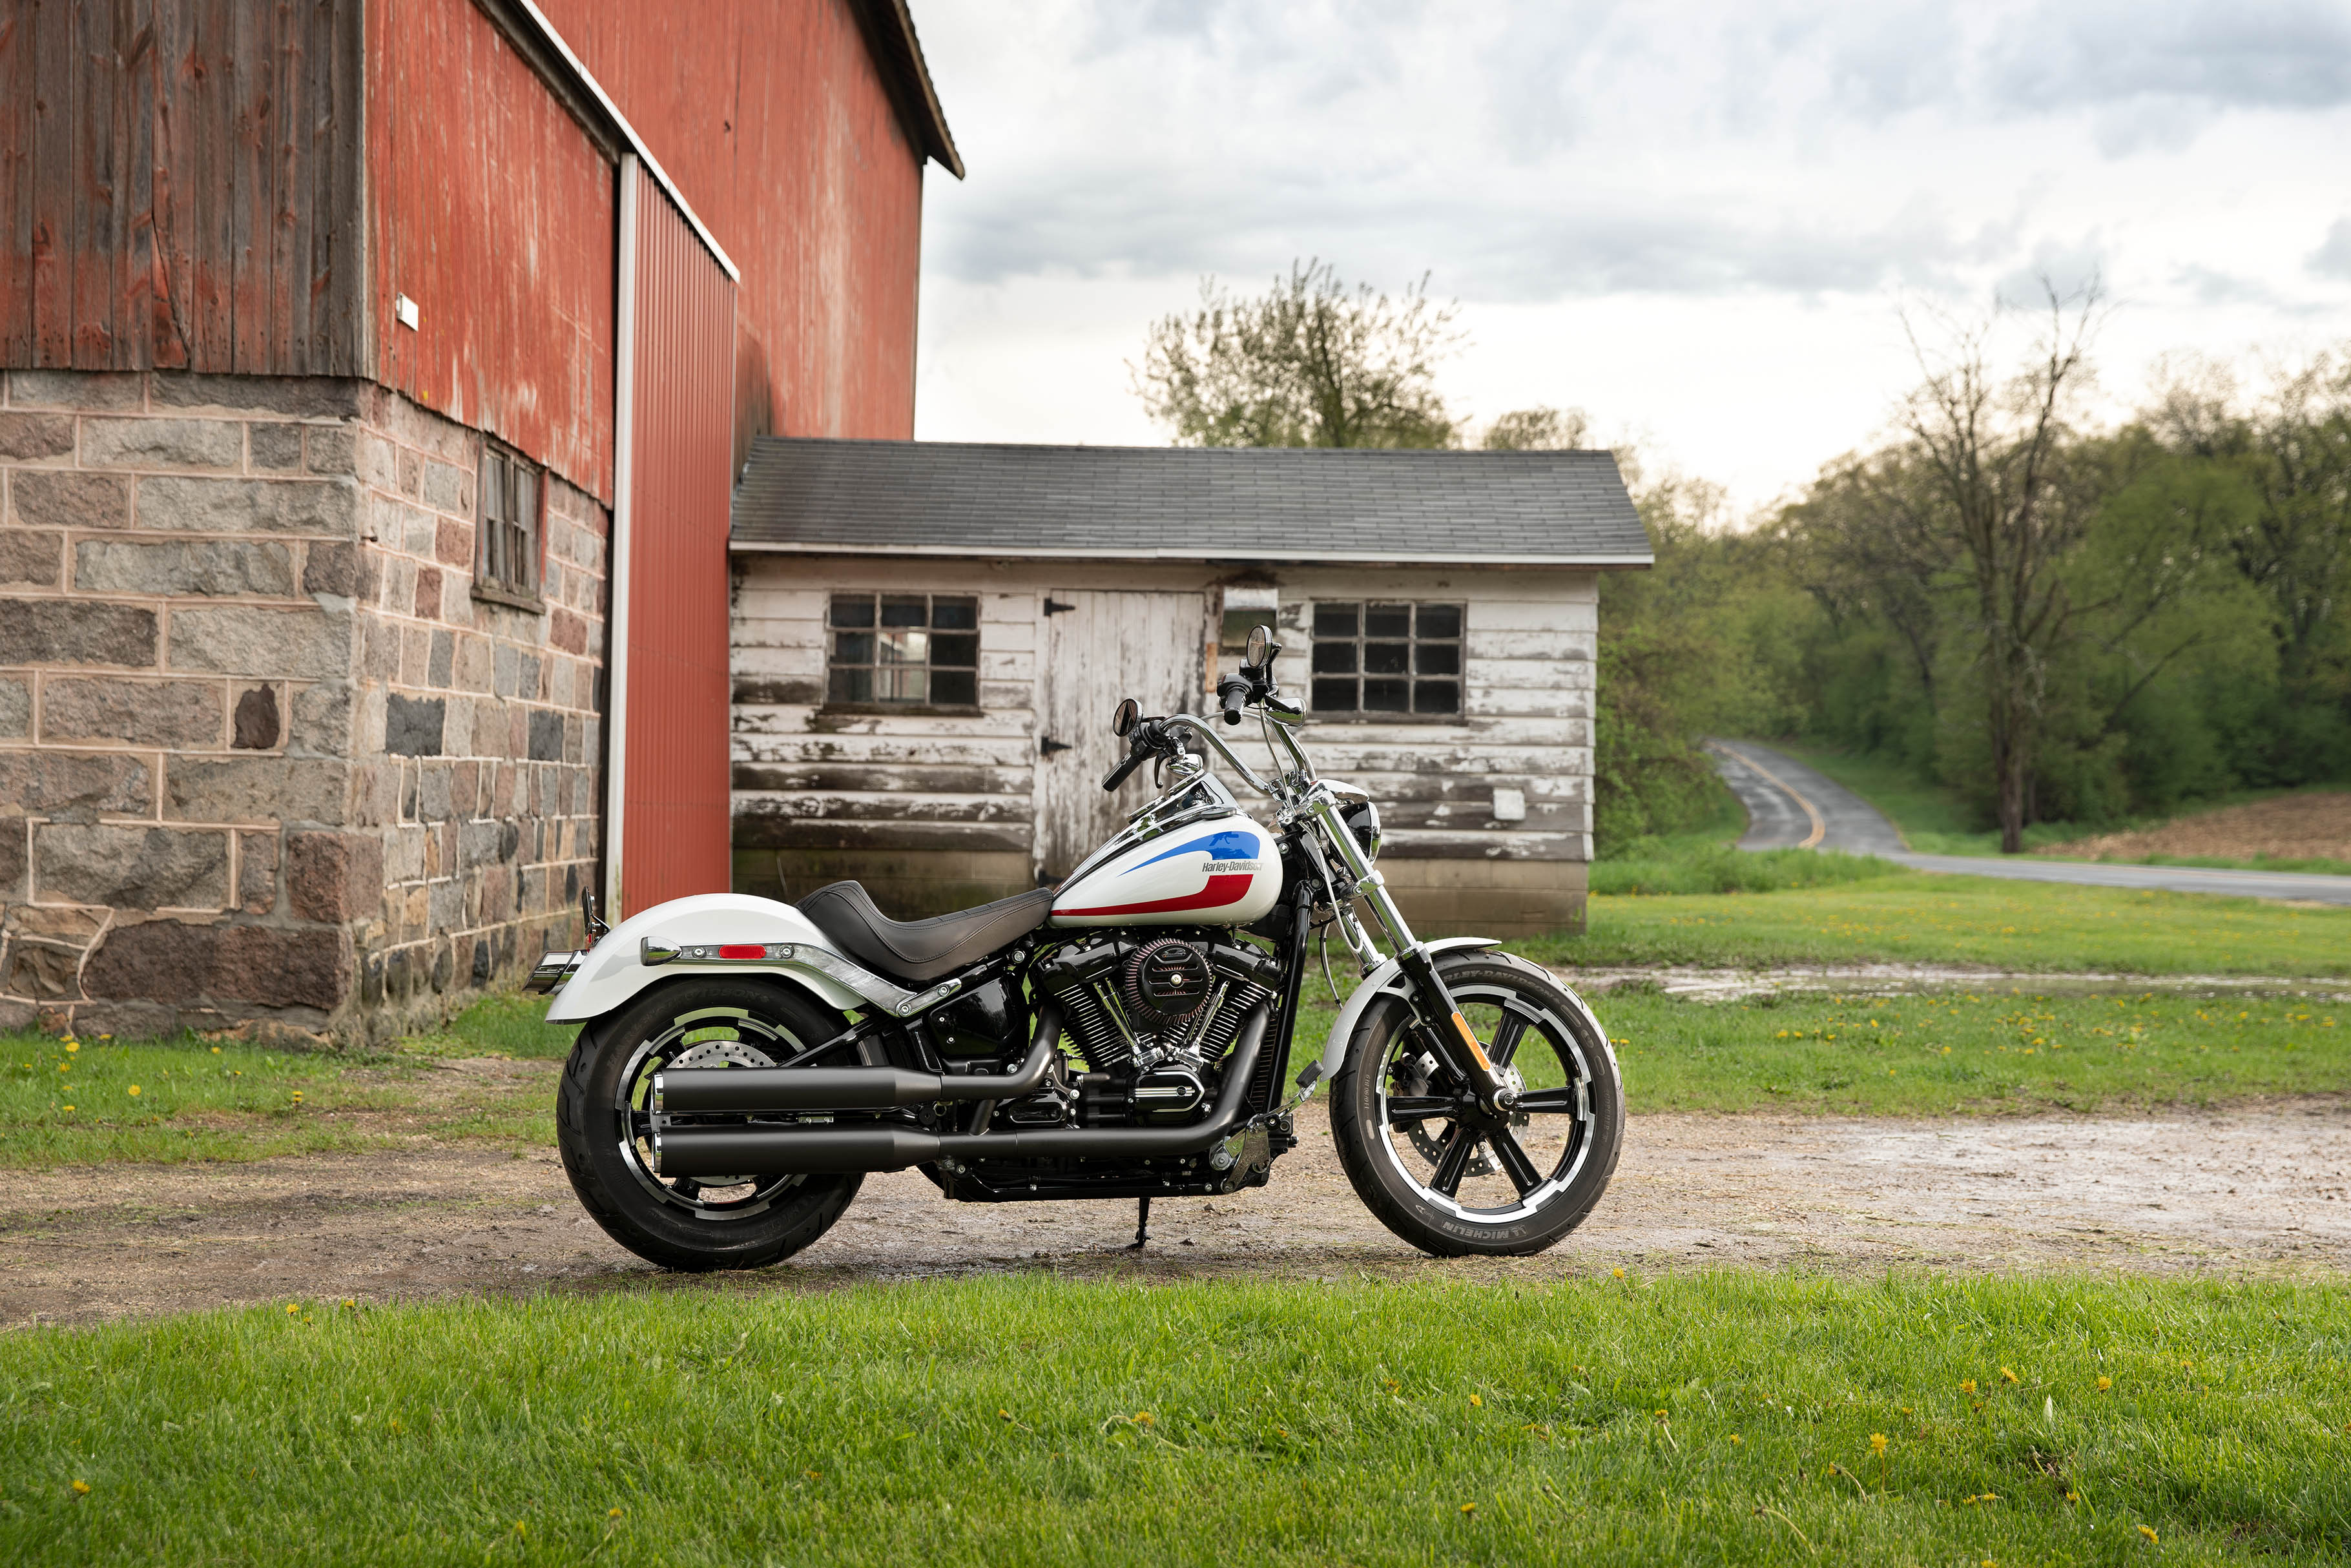  2020  Low  Rider  Motorcycle Harley  Davidson  USA